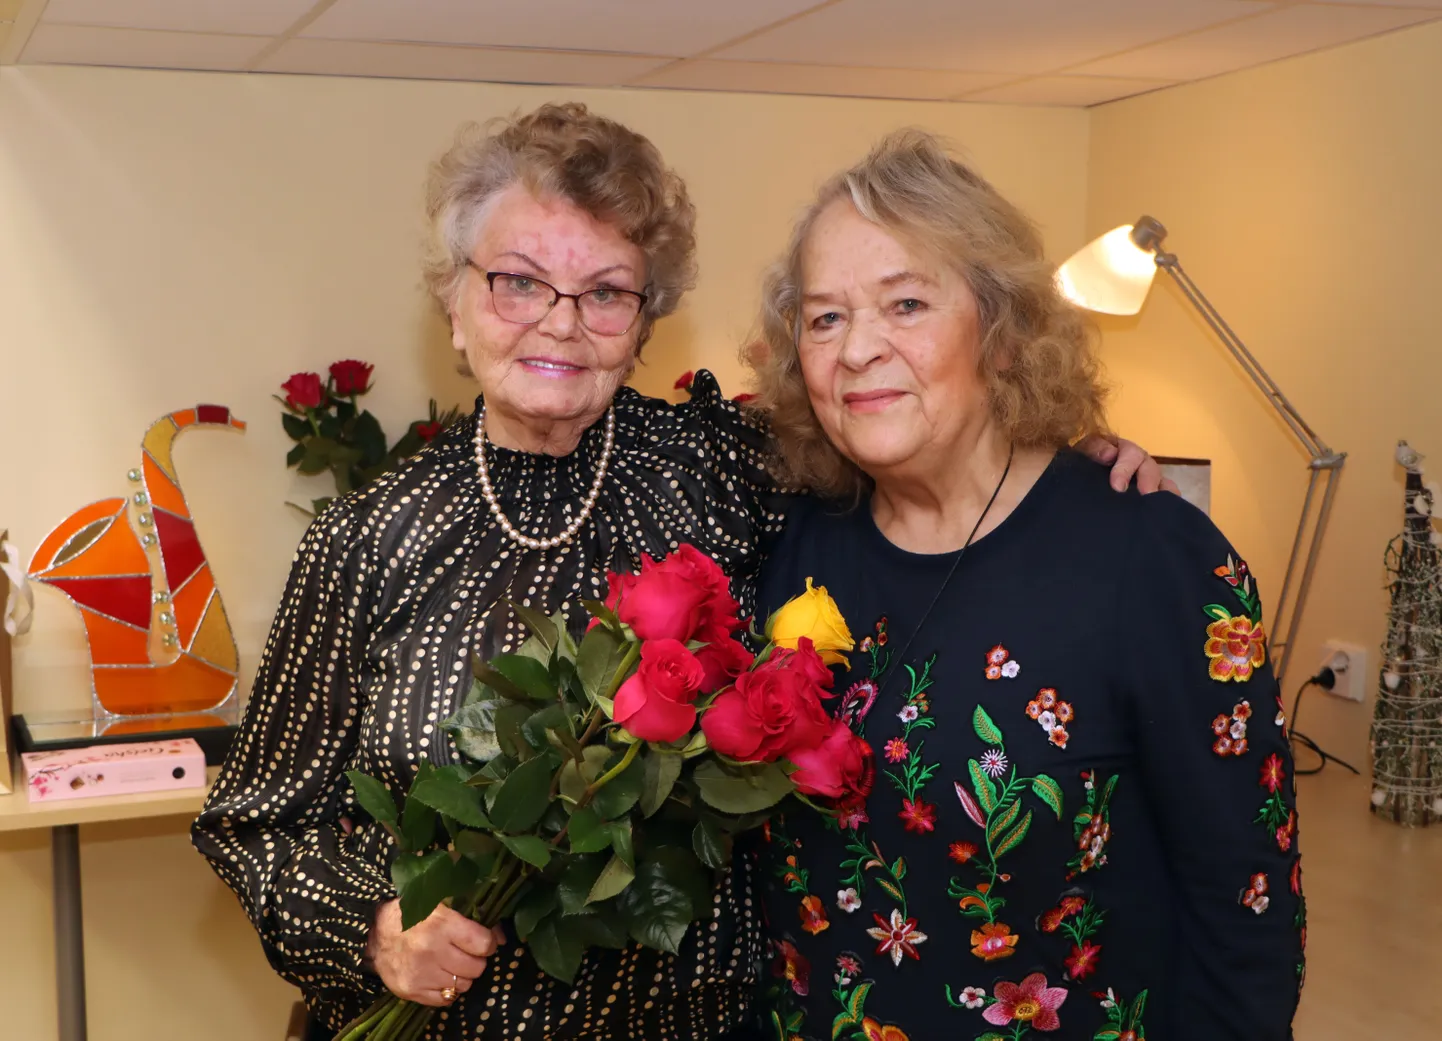 Klaveriõpetaja Natalja Kirillova ja akordioniõpetaja Malle Lüüde tähistasid tänavu oma 80. sünnipäeva. Nad mõlemad on kogu oma elu töötanud Jõhvi muusikakoolis ja nende panus selle õppeasutuse arengusse on hindamatu.